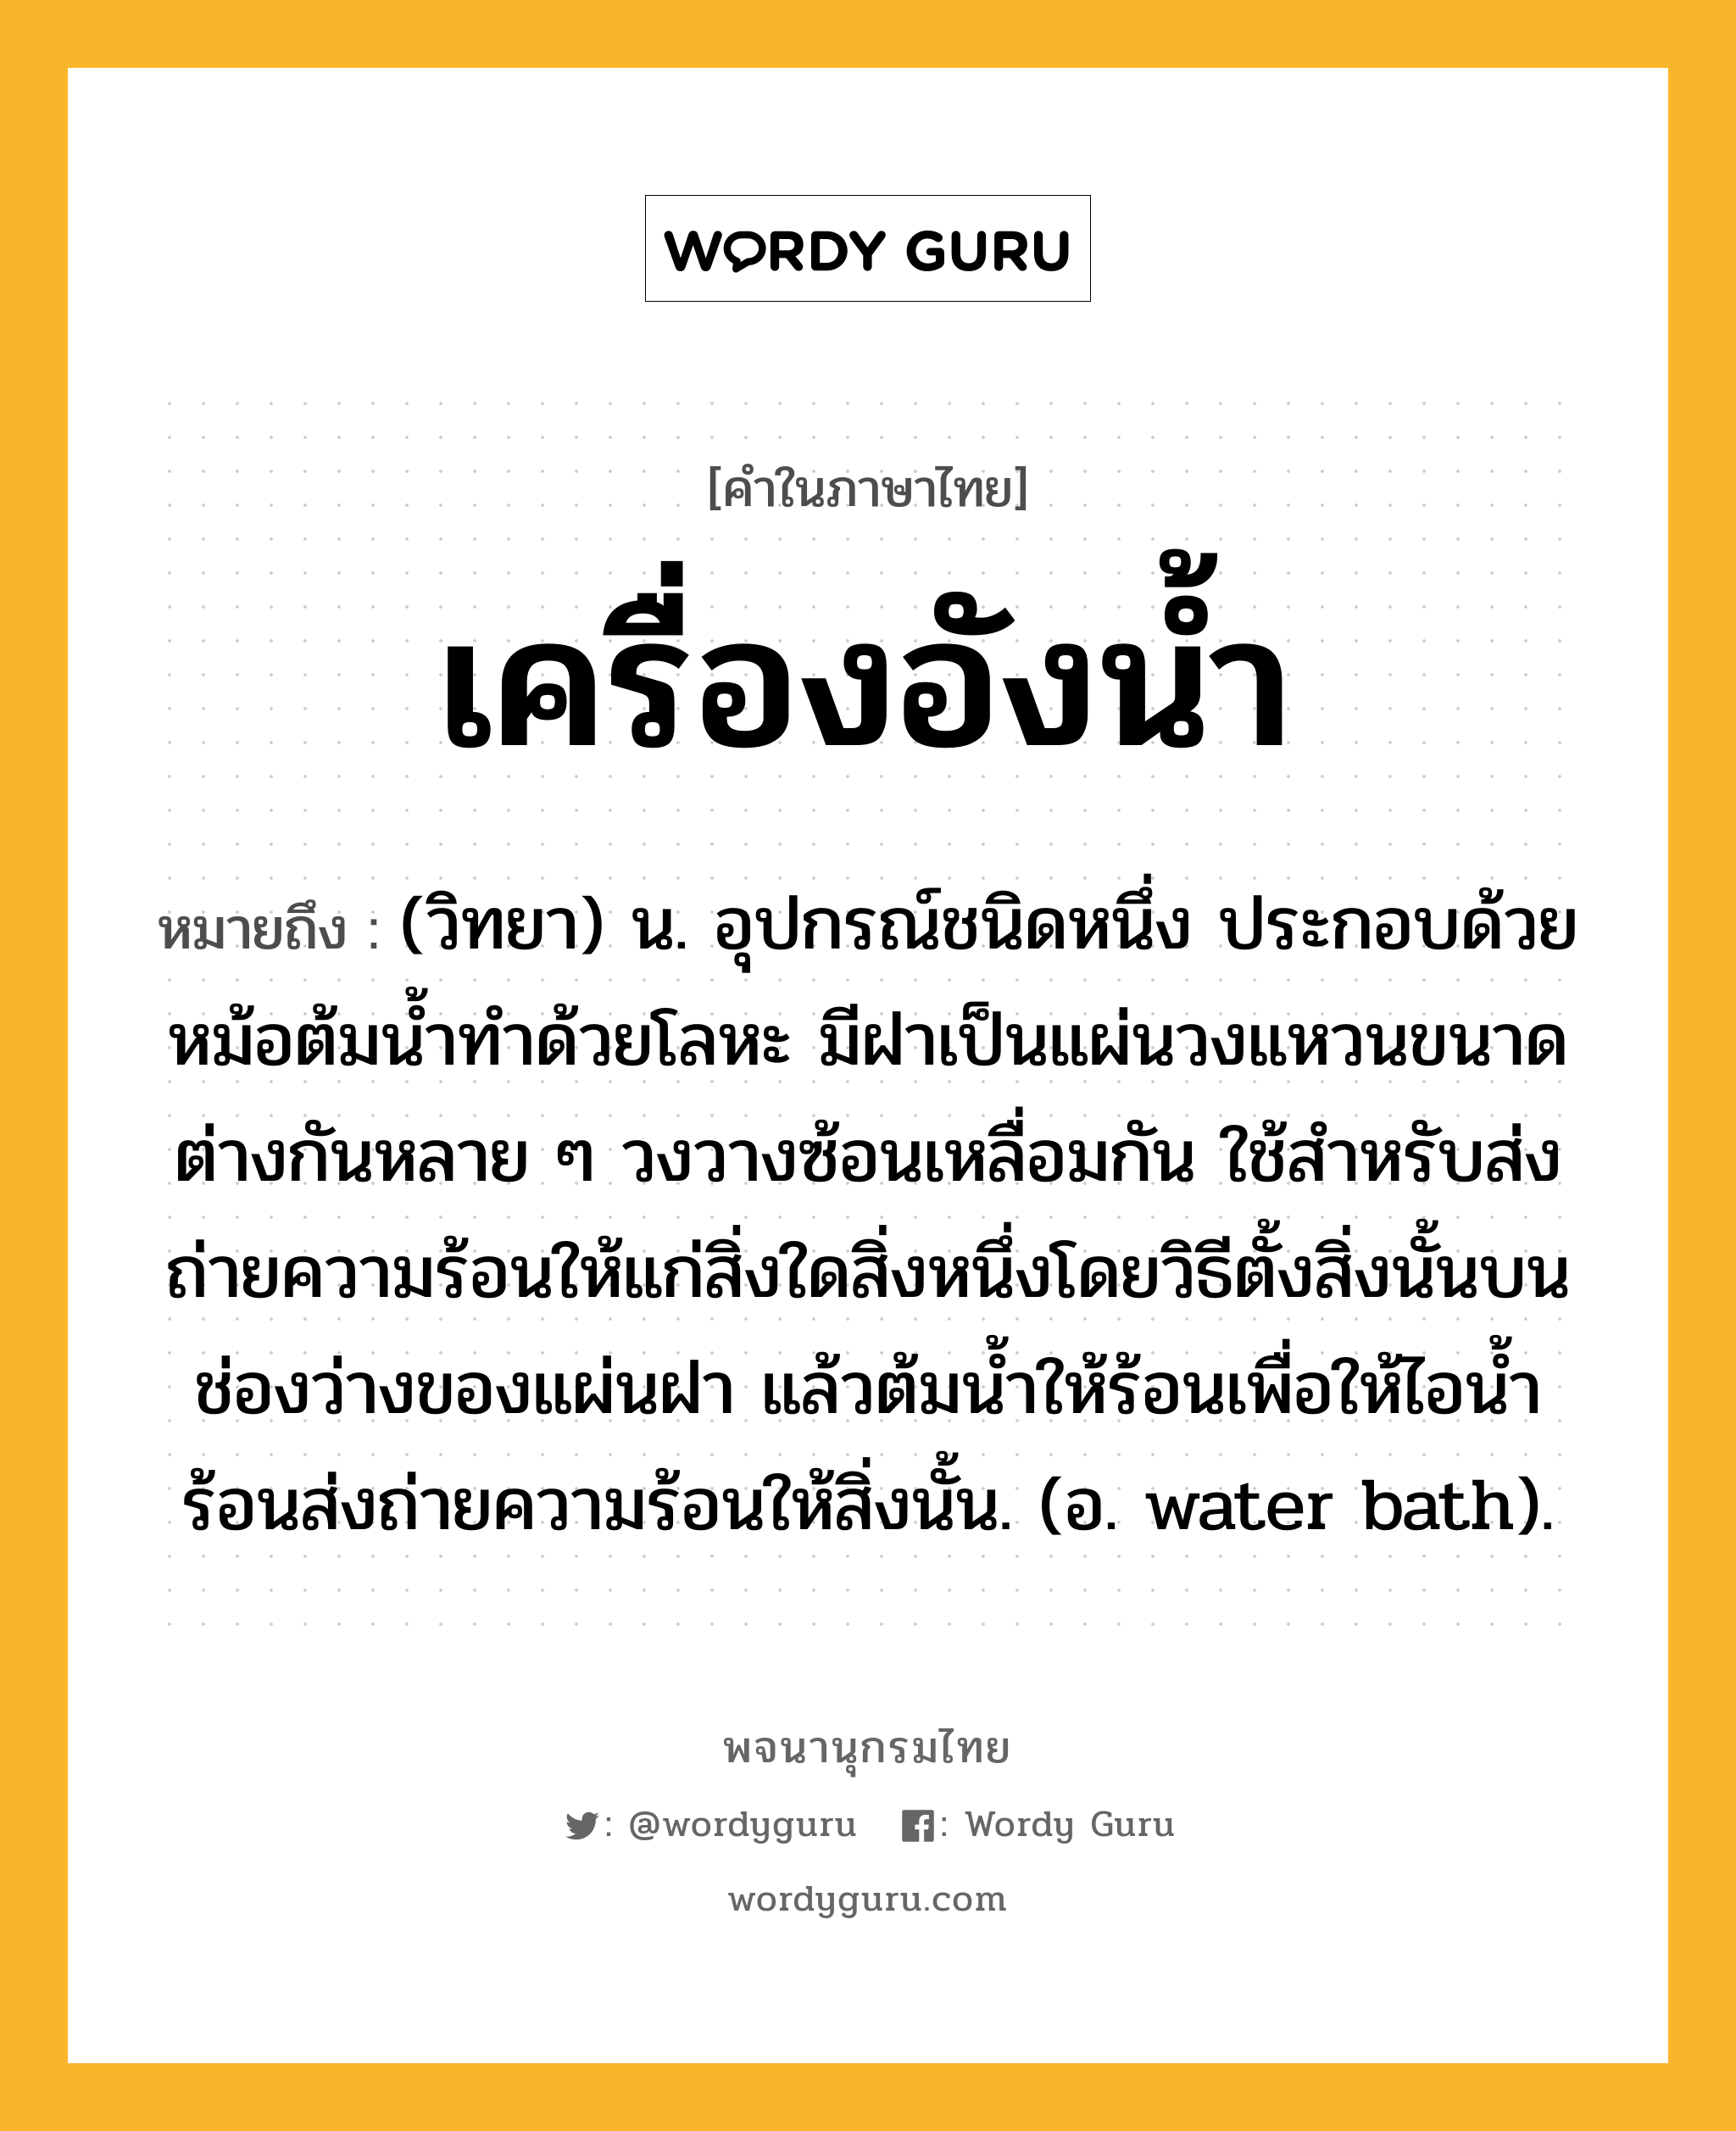 เครื่องอังน้ำ หมายถึงอะไร?, คำในภาษาไทย เครื่องอังน้ำ หมายถึง (วิทยา) น. อุปกรณ์ชนิดหนึ่ง ประกอบด้วยหม้อต้มนํ้าทําด้วยโลหะ มีฝาเป็นแผ่นวงแหวนขนาดต่างกันหลาย ๆ วงวางซ้อนเหลื่อมกัน ใช้สําหรับส่งถ่ายความร้อนให้แก่สิ่งใดสิ่งหนึ่งโดยวิธีตั้งสิ่งนั้นบนช่องว่างของแผ่นฝา แล้วต้มนํ้าให้ร้อนเพื่อให้ไอนํ้าร้อนส่งถ่ายความร้อนให้สิ่งนั้น. (อ. water bath).